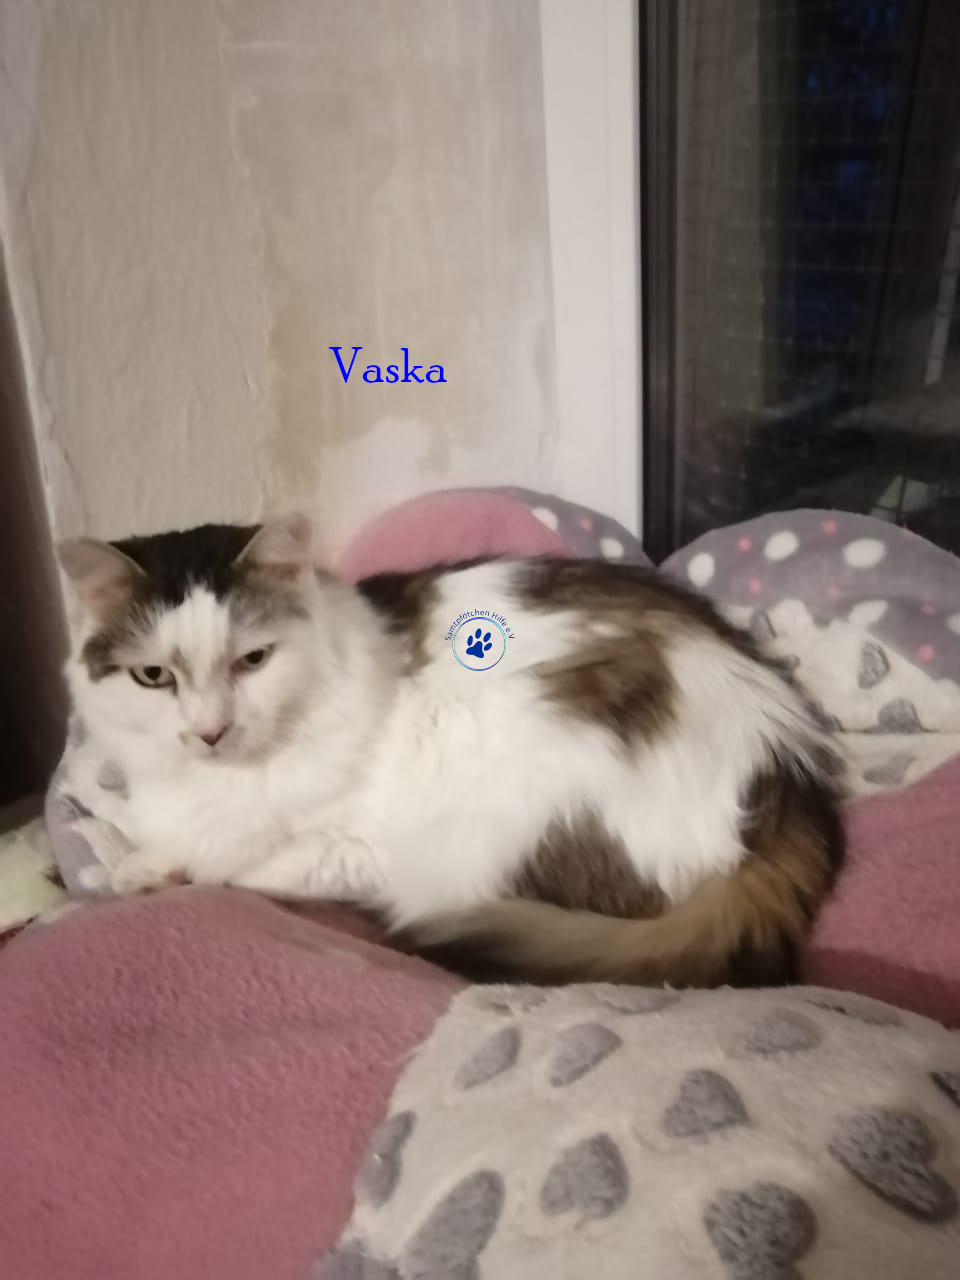 Vaska